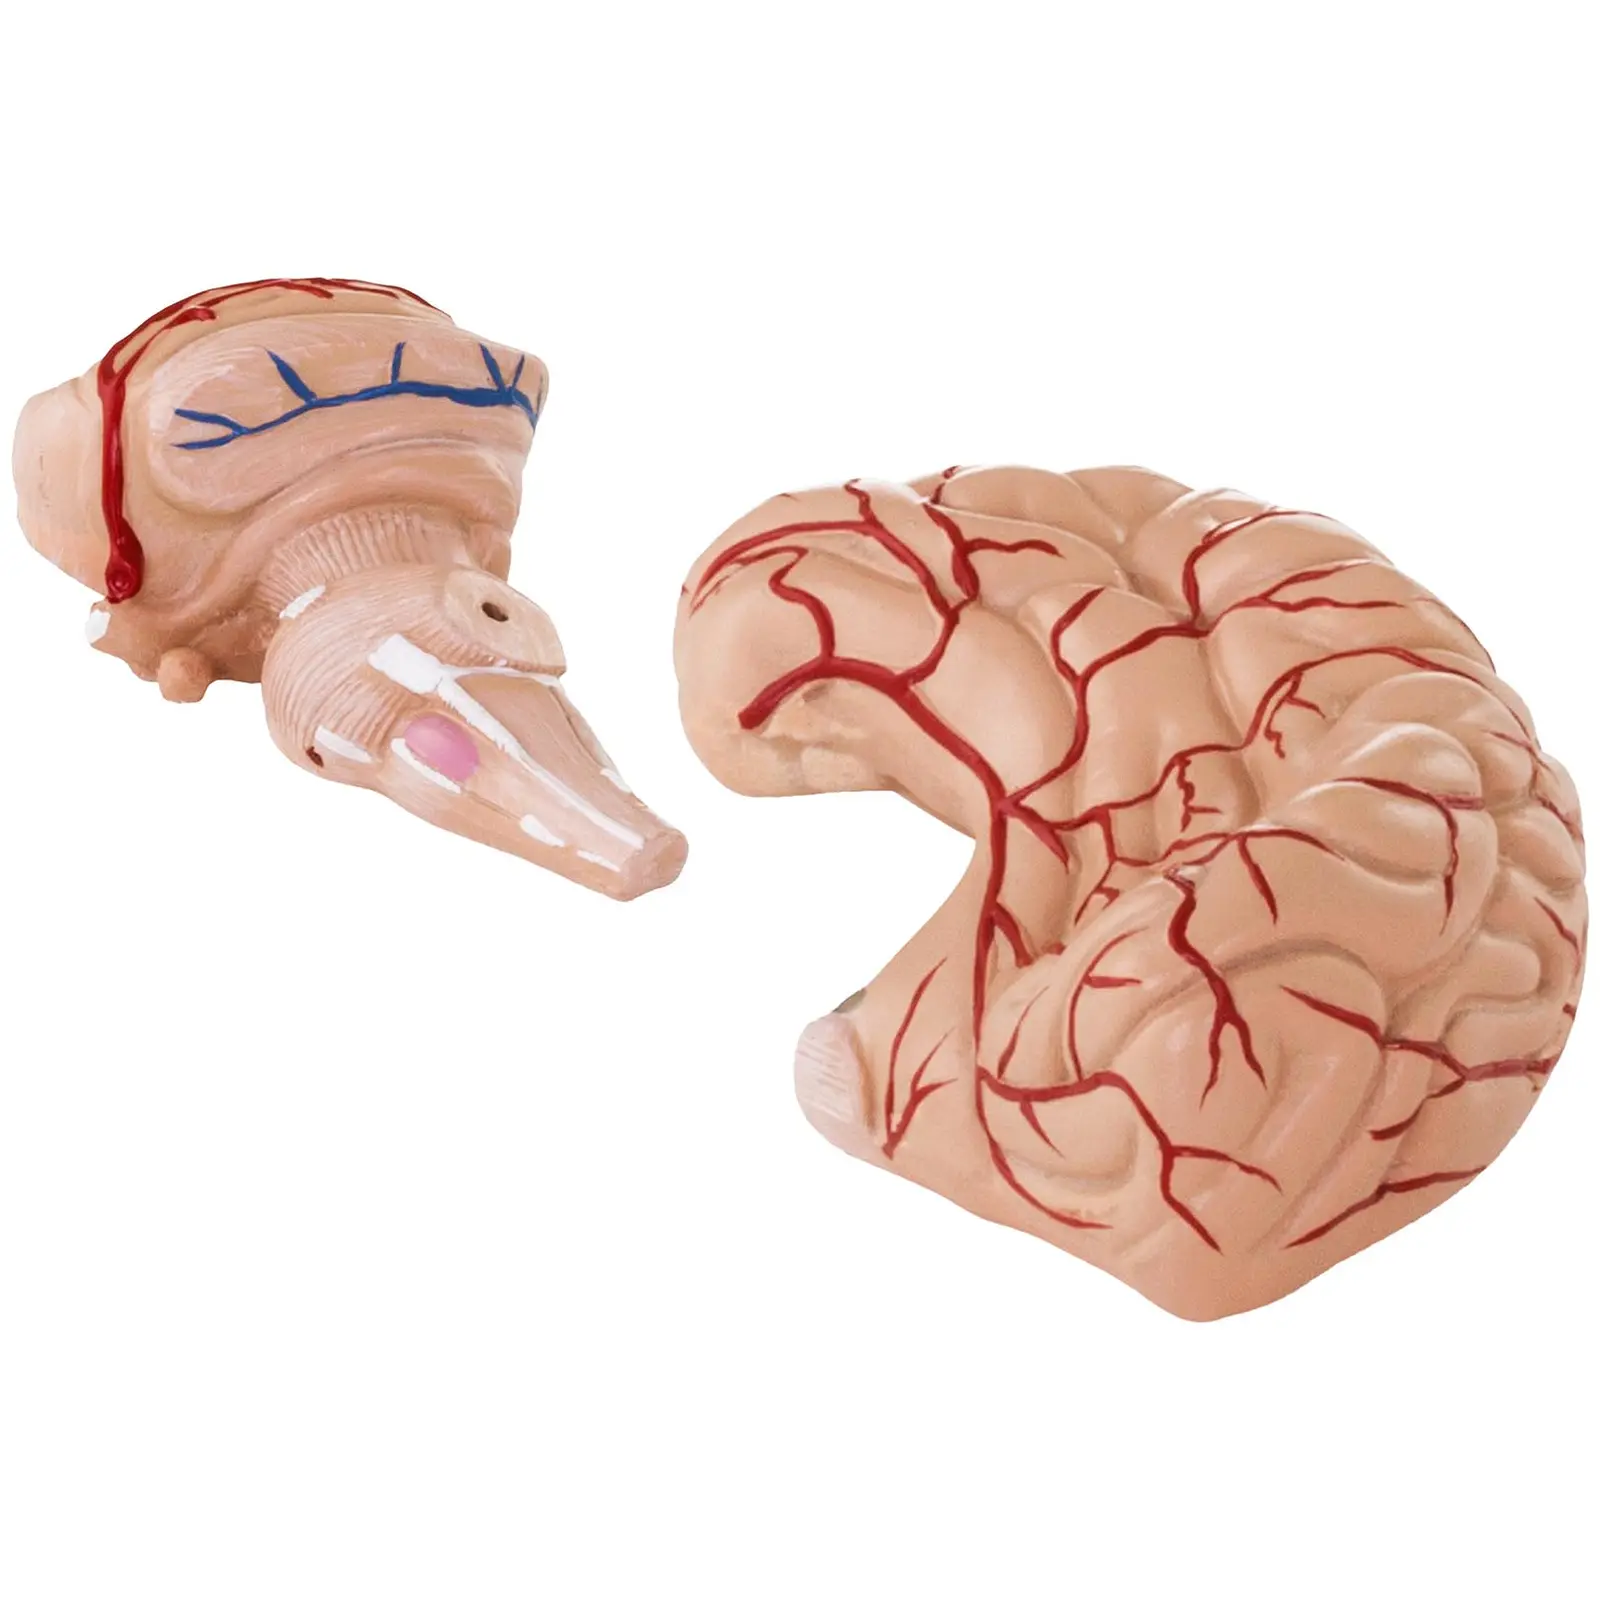 Model mózgu - 9 segmentów - naturalnej wielkości